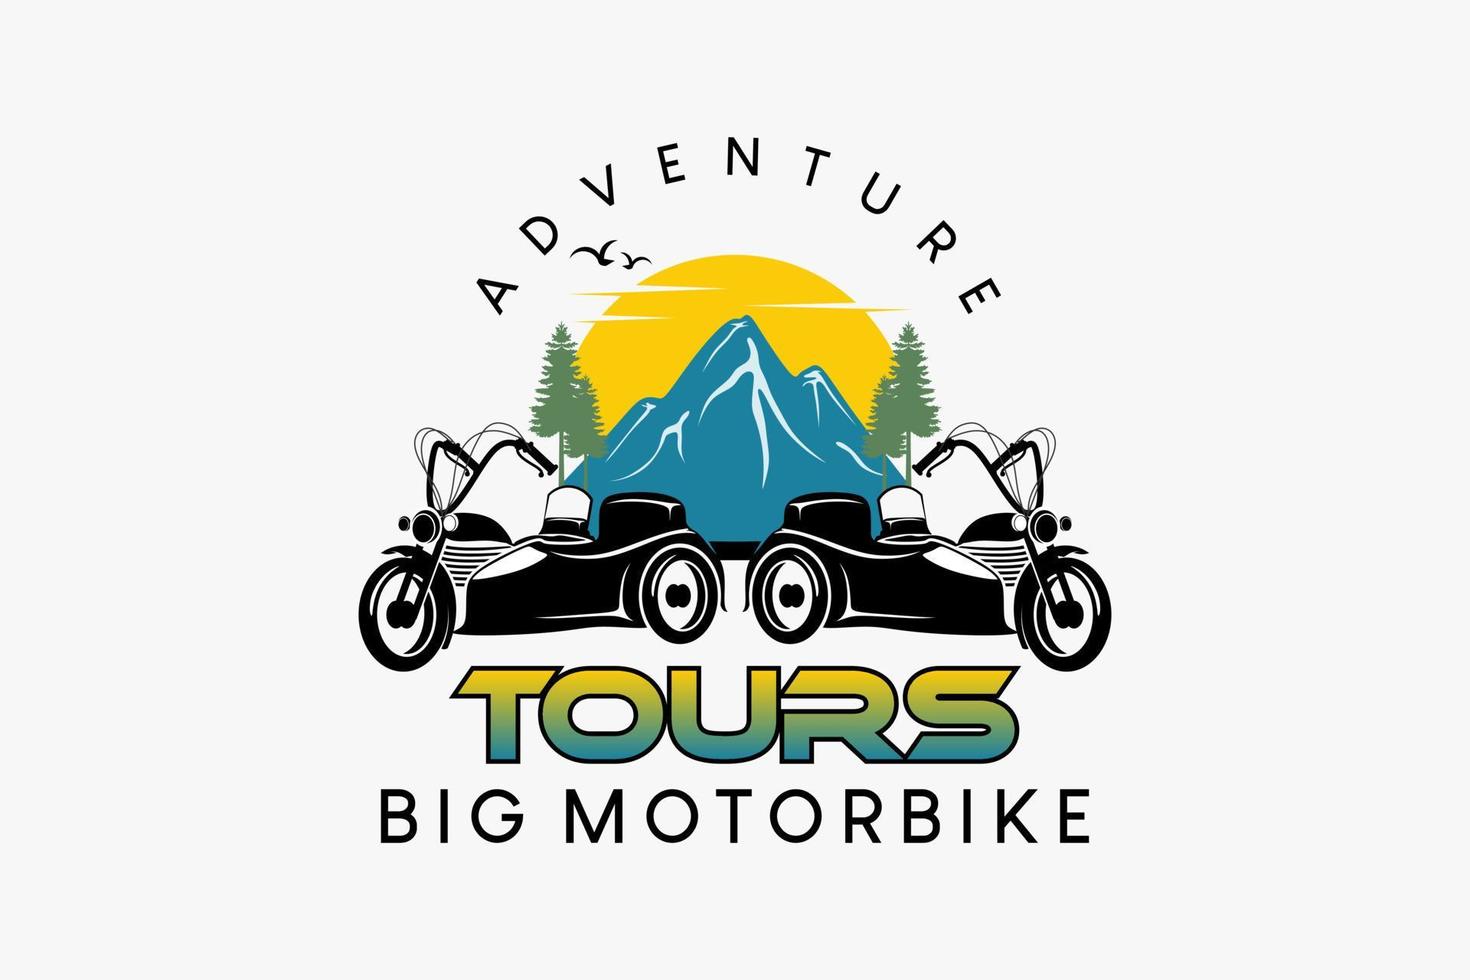 großes Motorrad-Beiwagen-Logo-Design für Reisen oder Abenteuer, große Motorrad-Silhouette kombiniert mit der Natur im kreativen Retro-Farbkonzept vektor